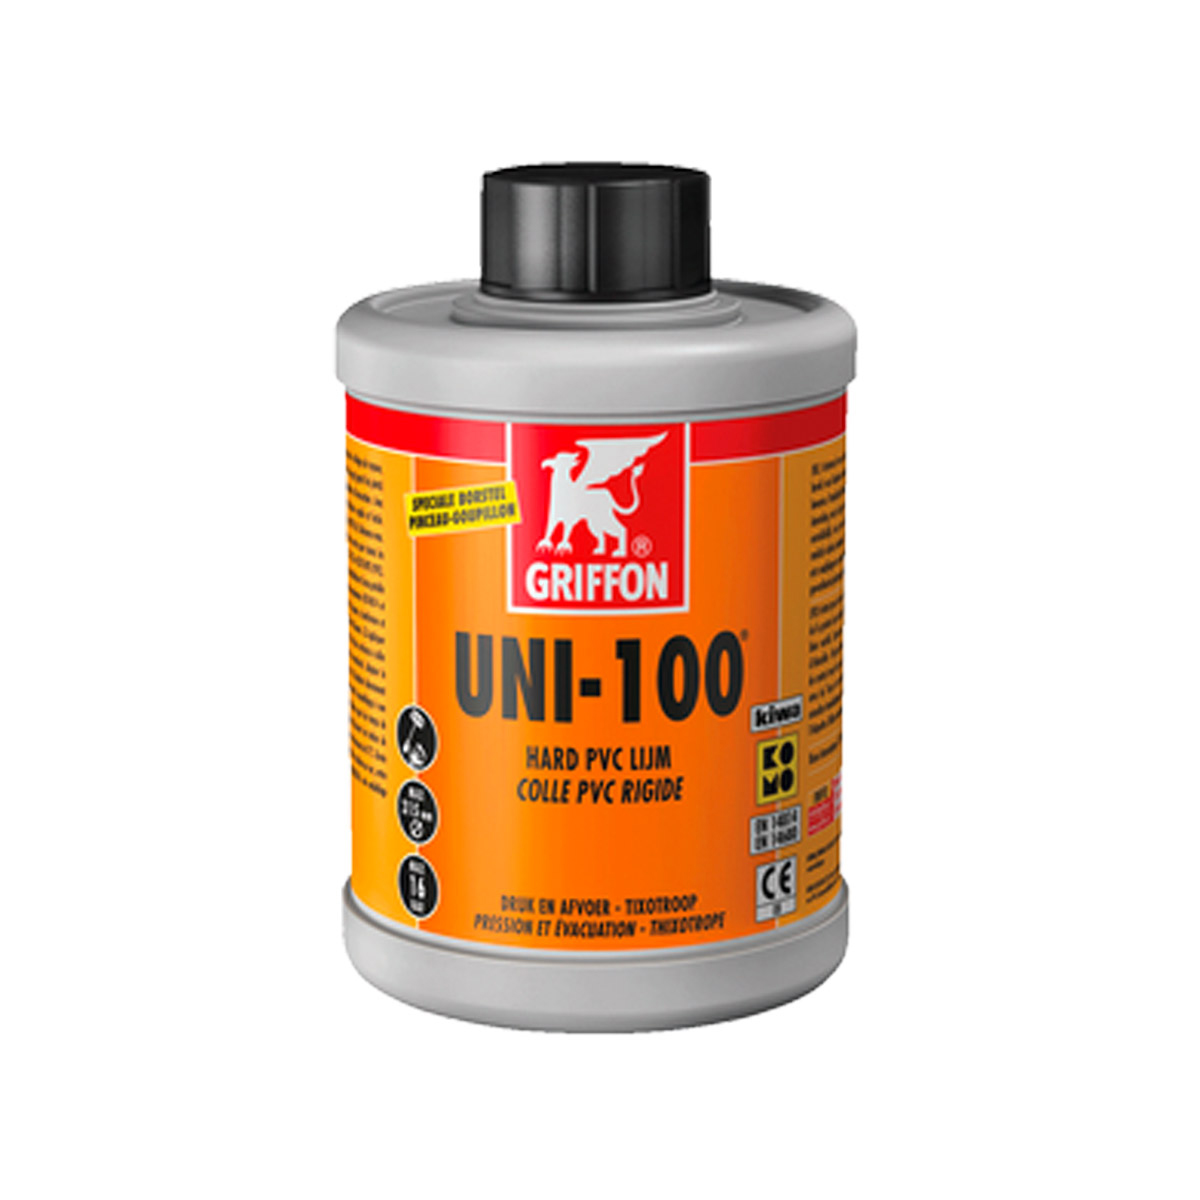 Solvent Cement GRIFFON UNI-100, 125ml Solvent Cement GRIFFON UNI-100, 125ml